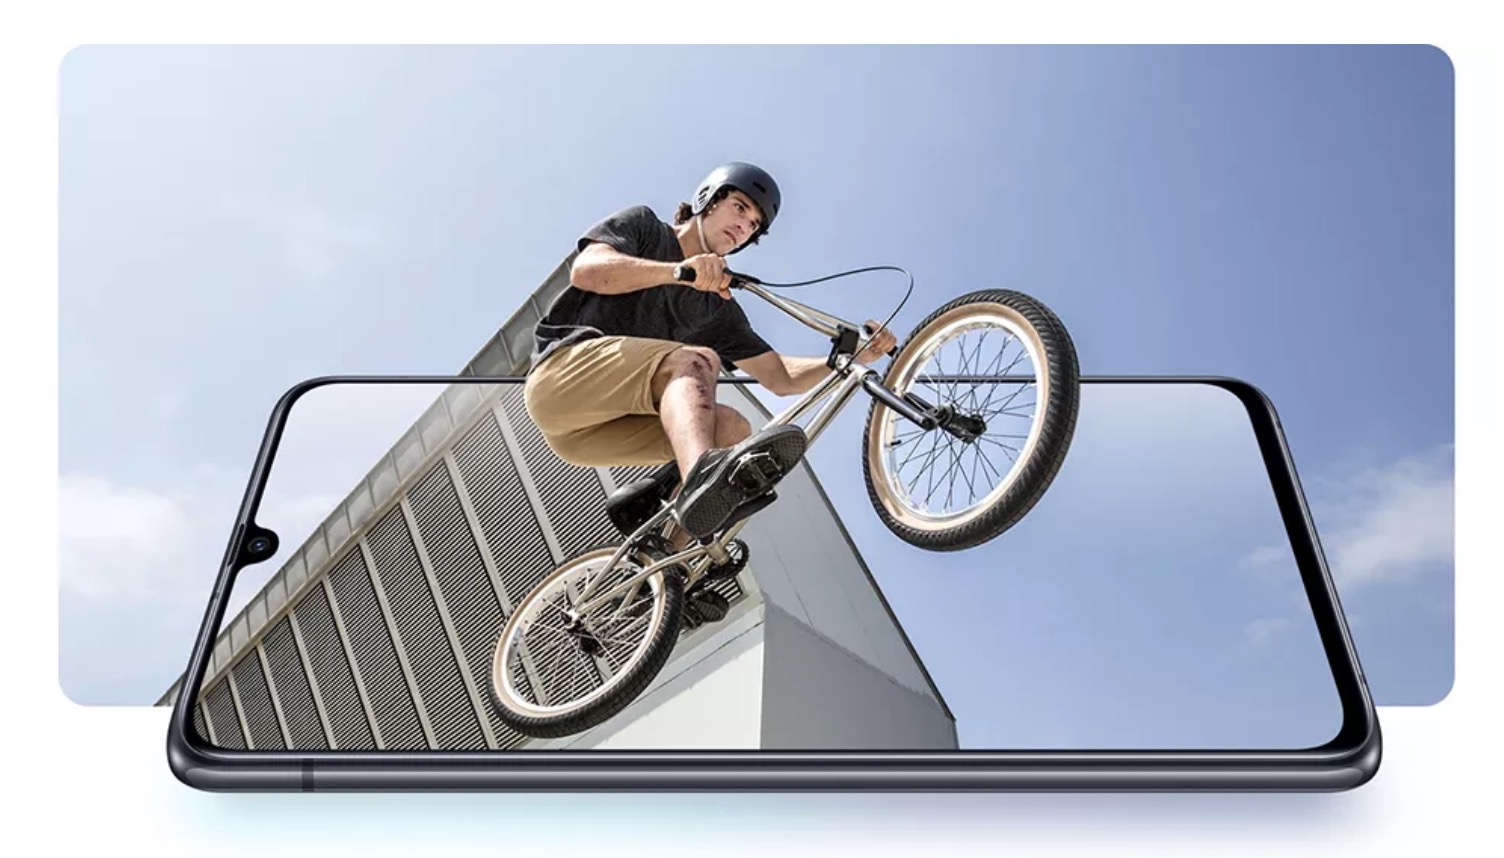 Samsung ra mắt Galaxy
A90 5G với Snapdragon 855, 3 camera sau 48MP, hỗ trợ Samsung
DeX, giá 17.2 triệu đồng